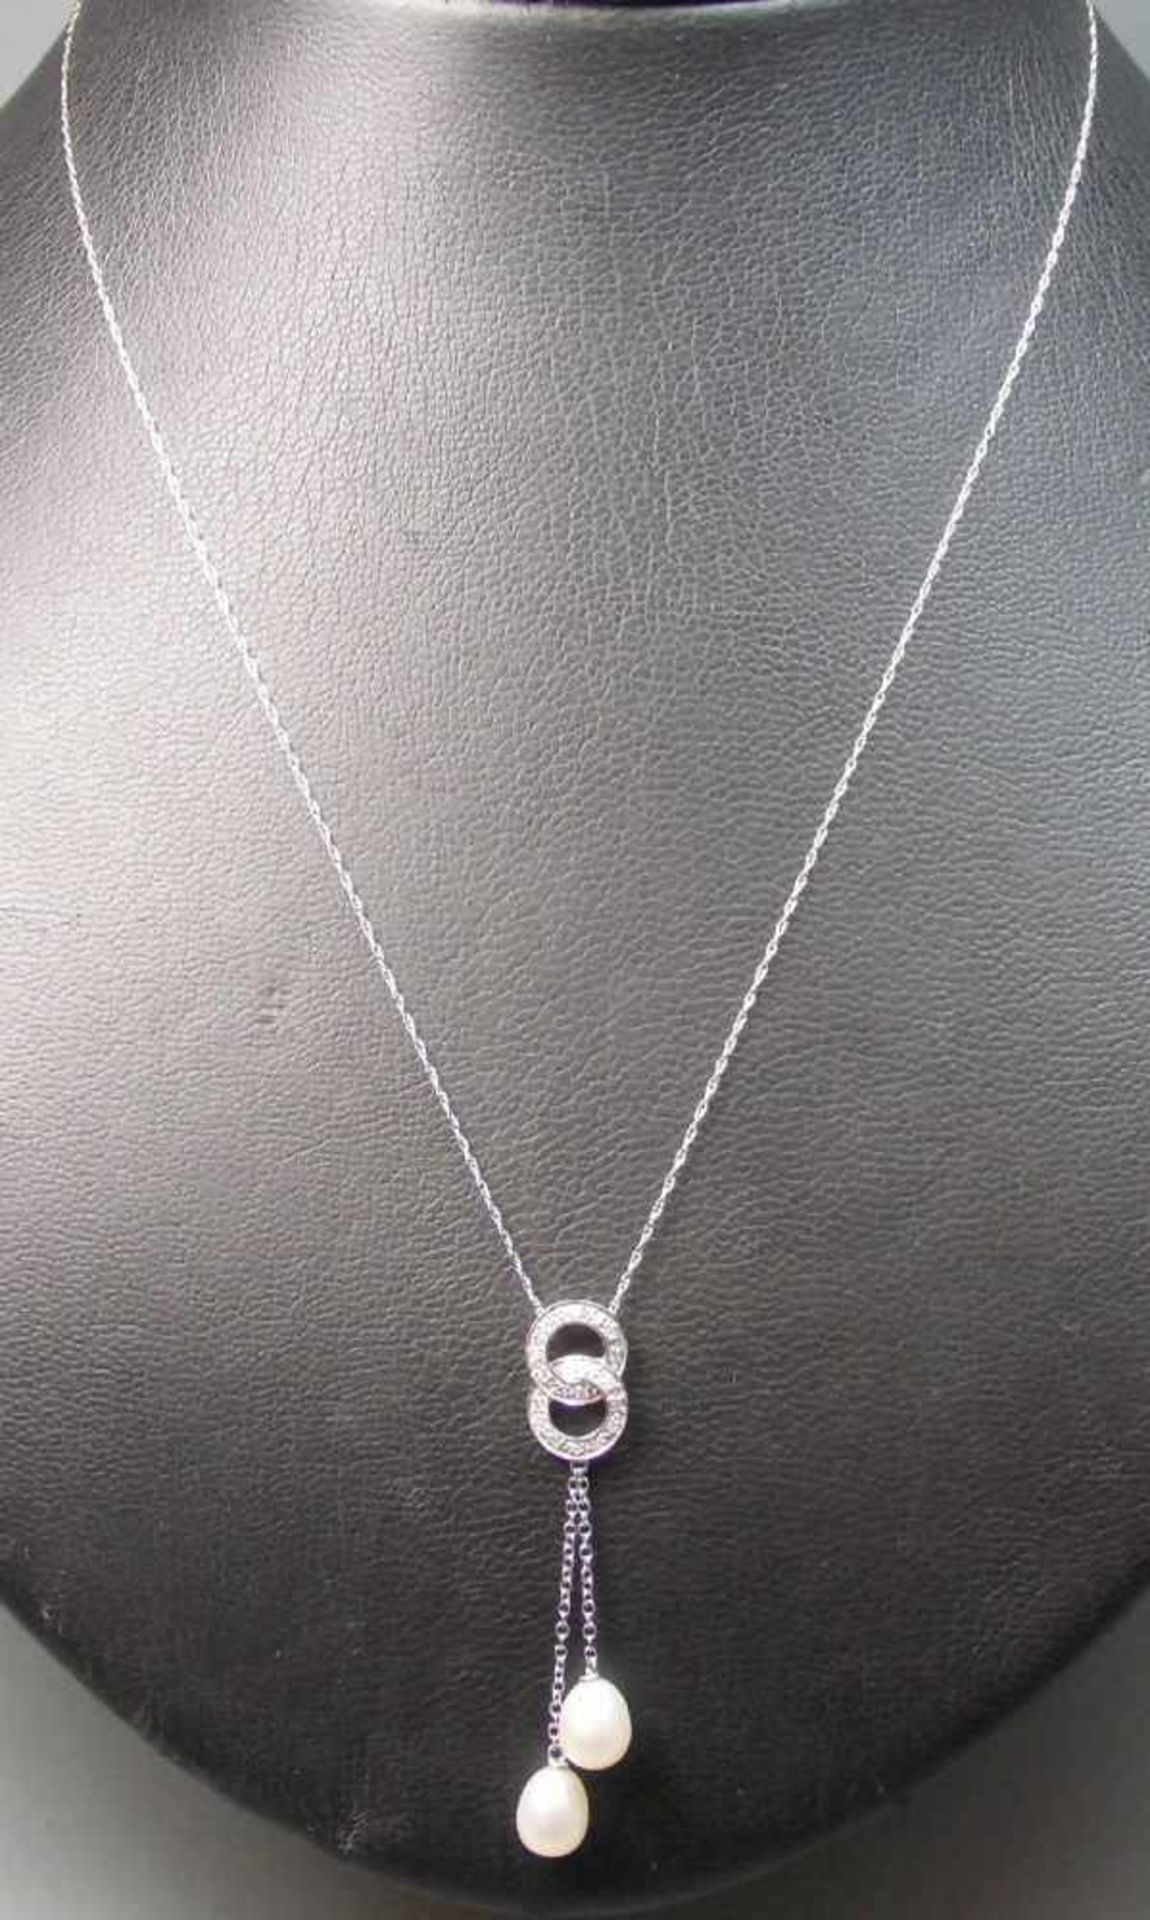 Y - KETTE / necklace, 585er Gold (2,7 g), zwei ineinander verschlungene Ringe, darunter zwei